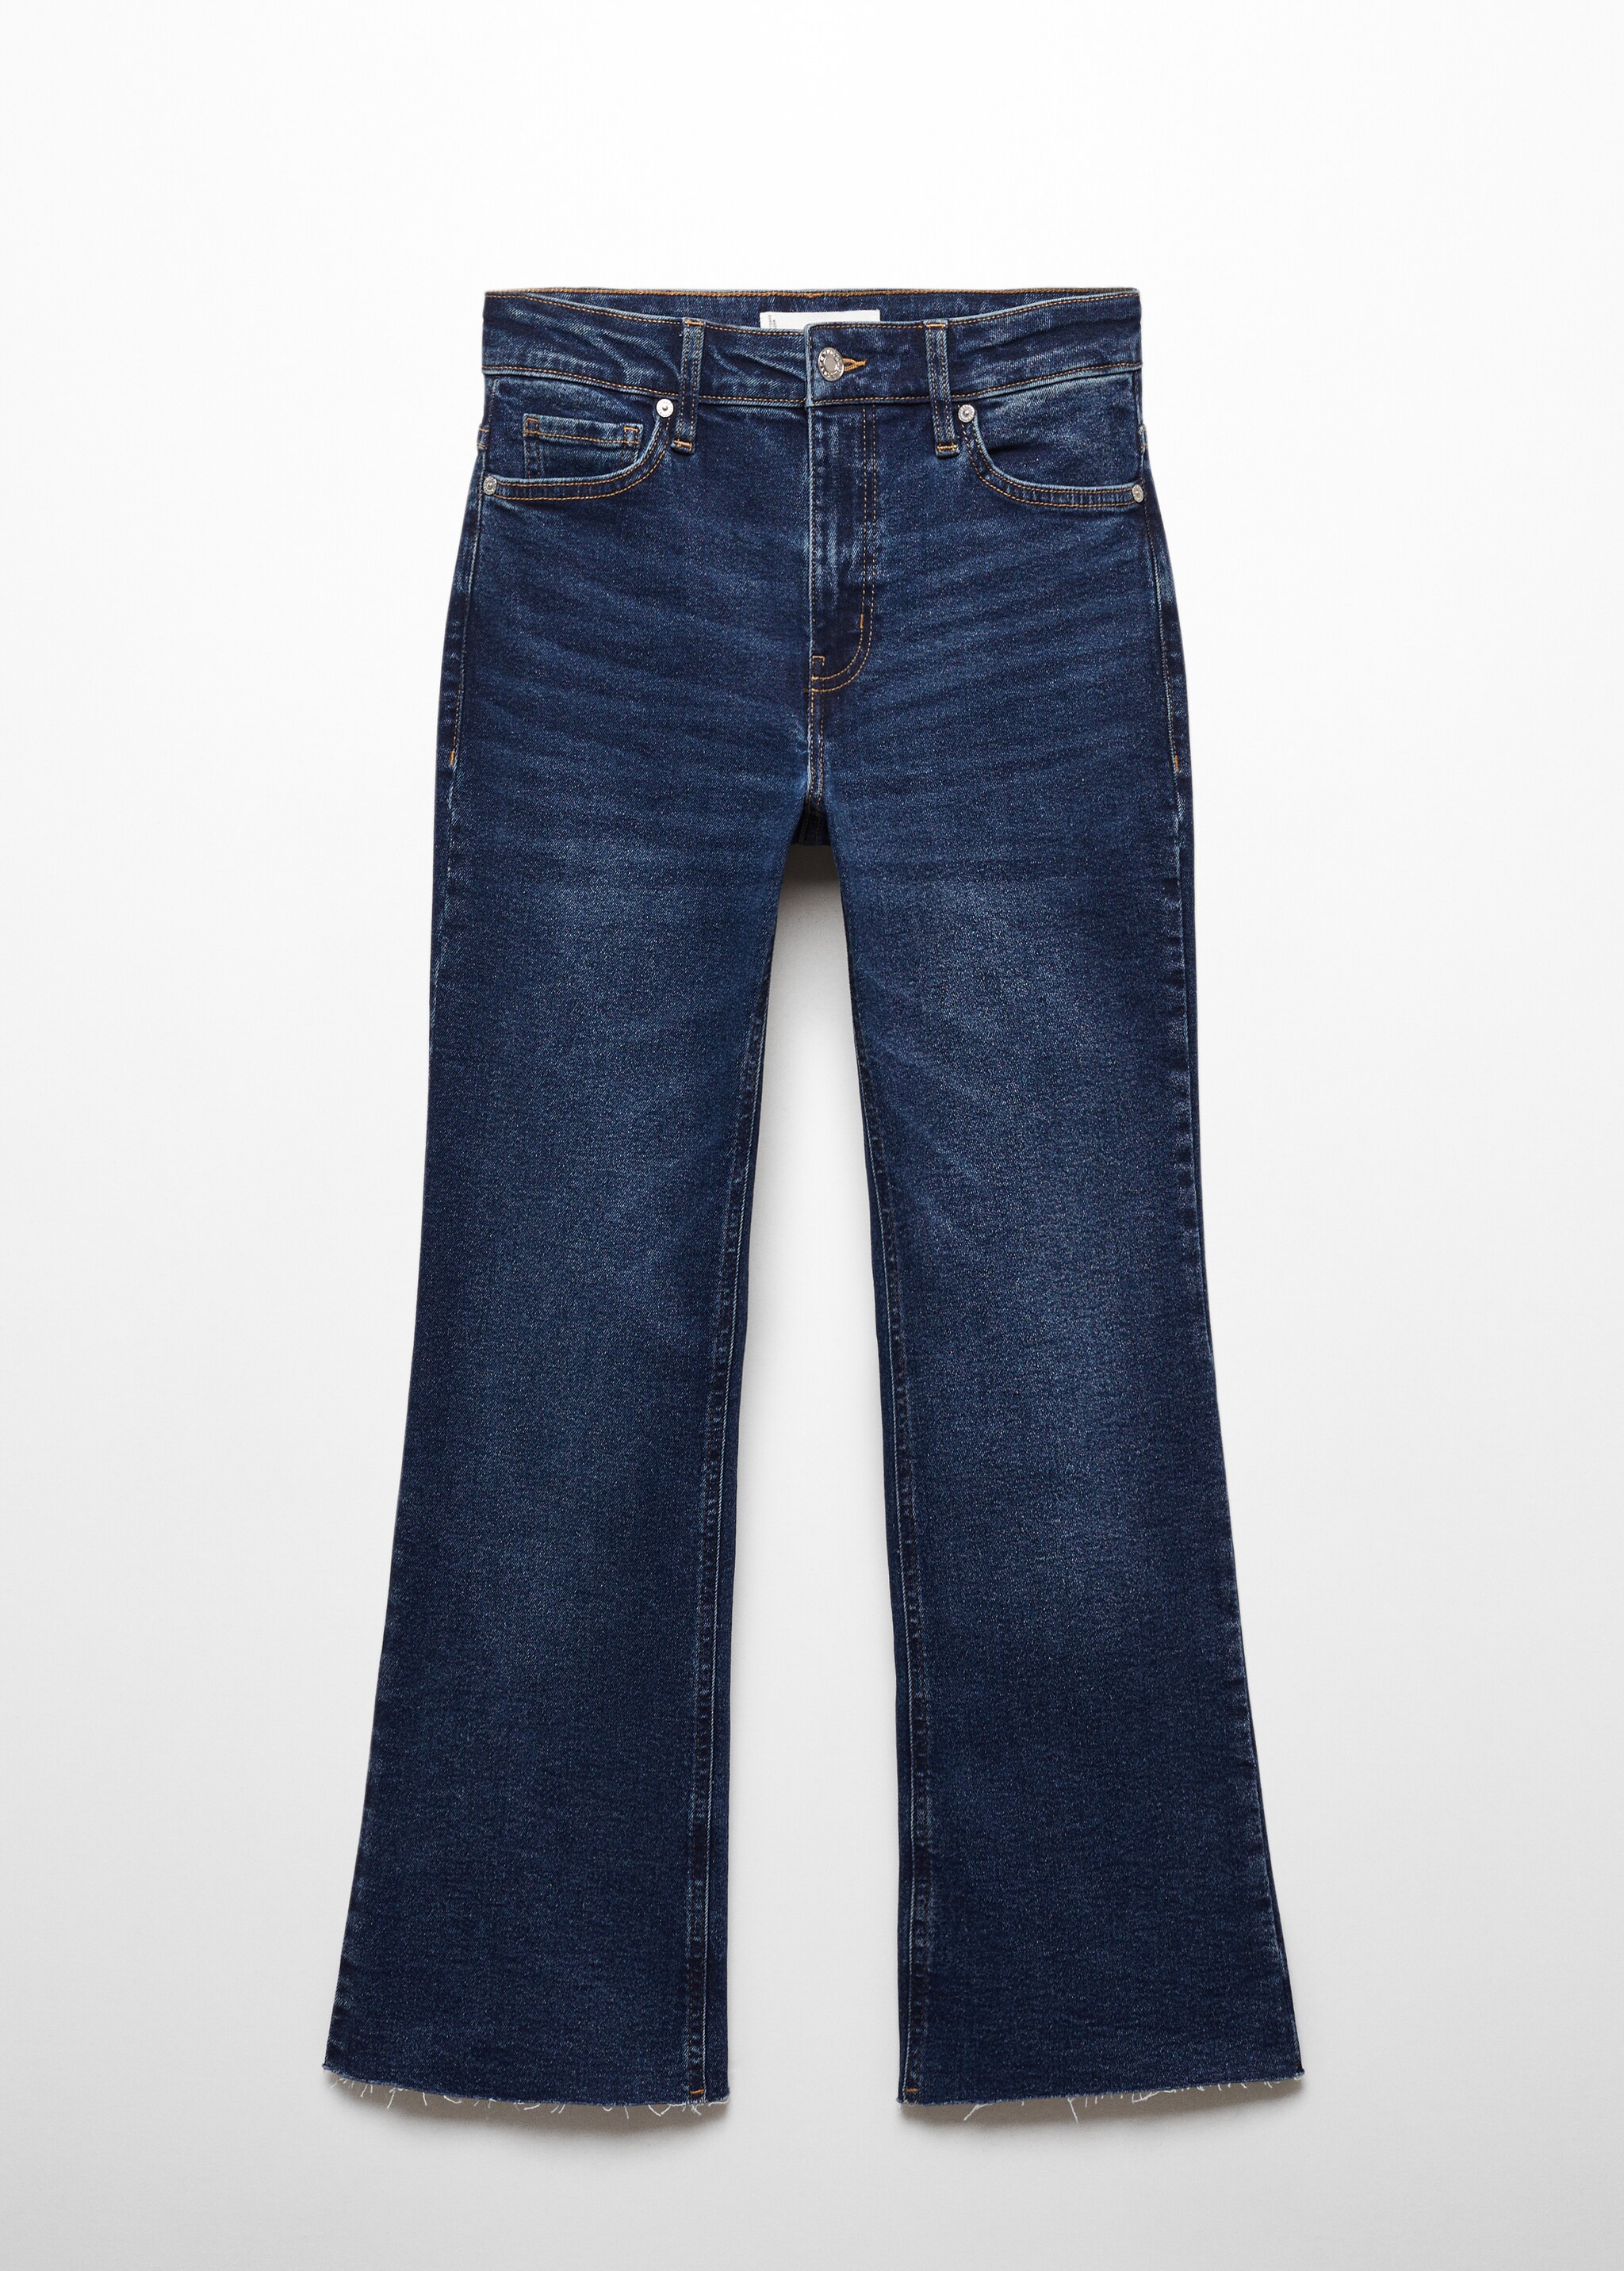 Укороченные джинсы flare Sienna - Изделие без модели